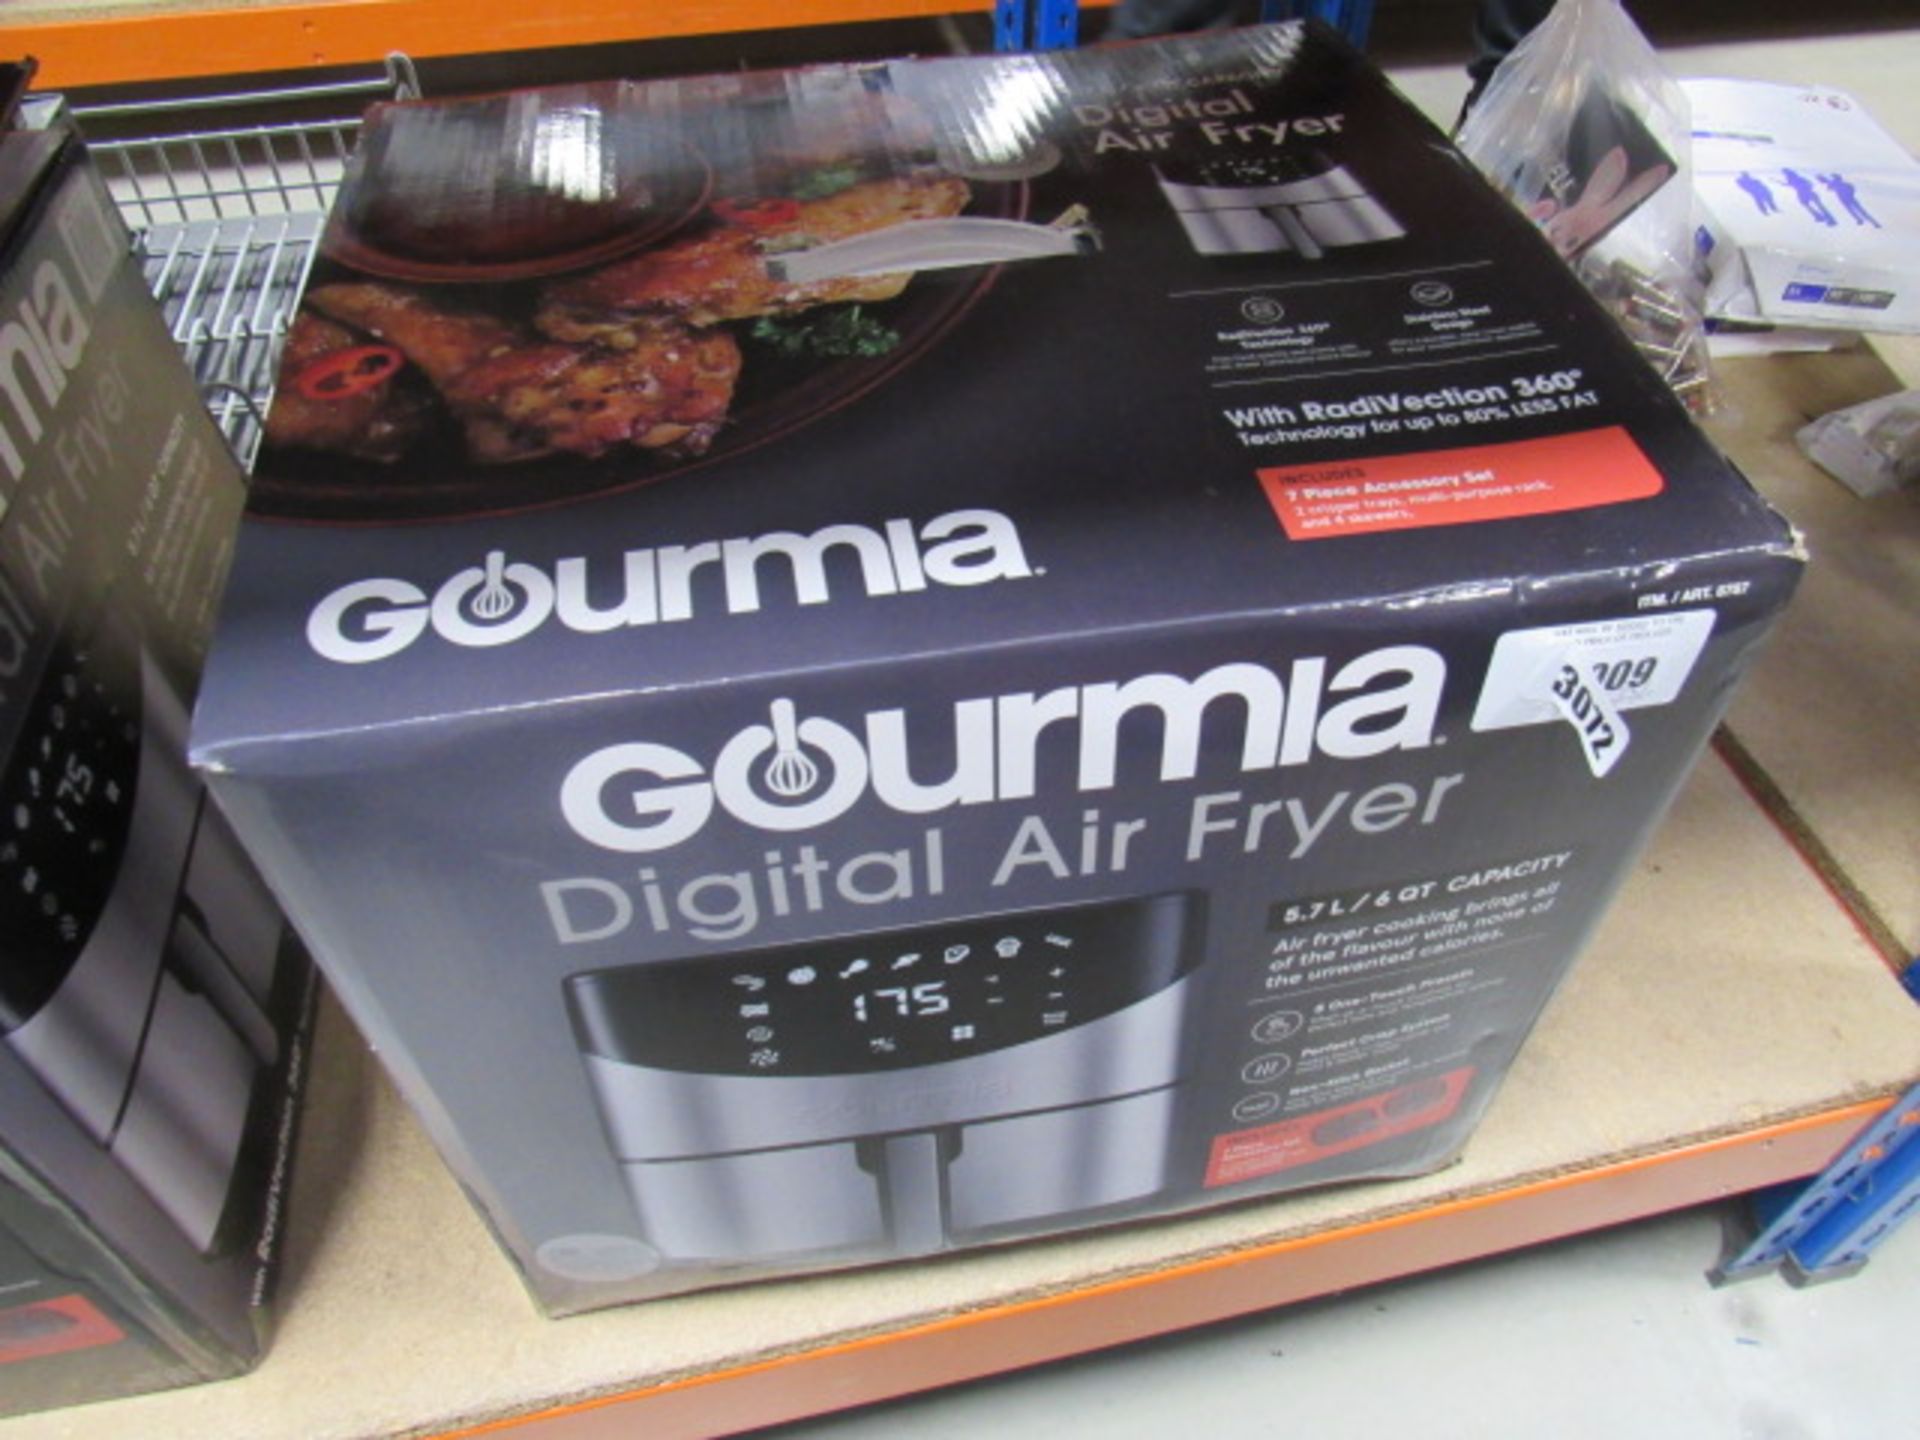 3009 - Boxed Gourmet digital air fryer